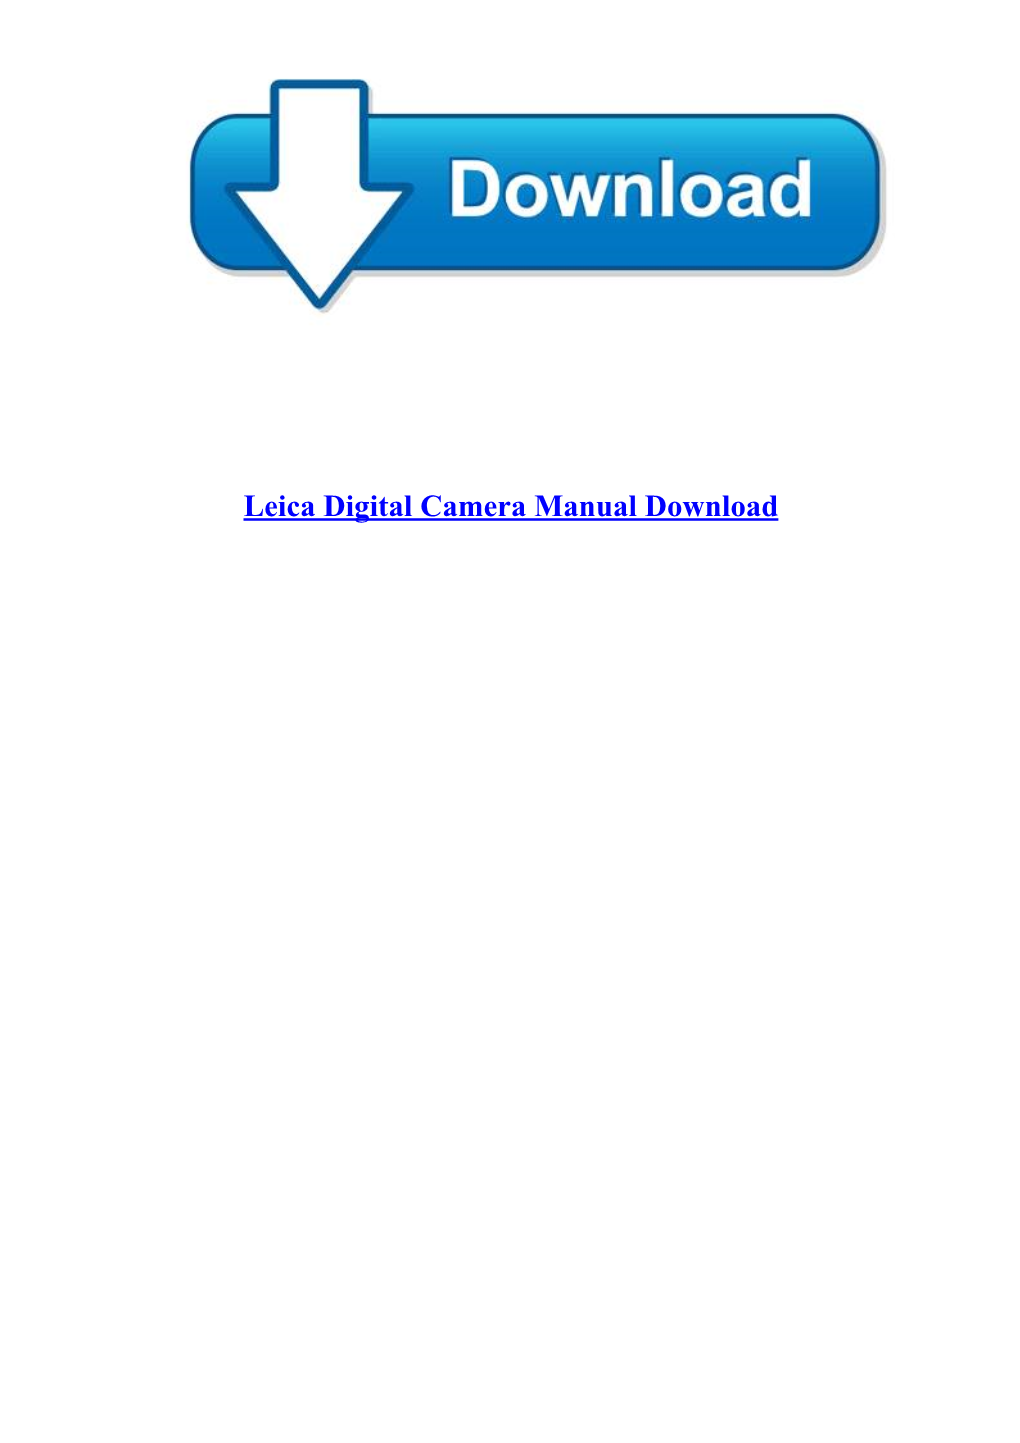 [Update P.D.F] Leica Digital Camera Manual